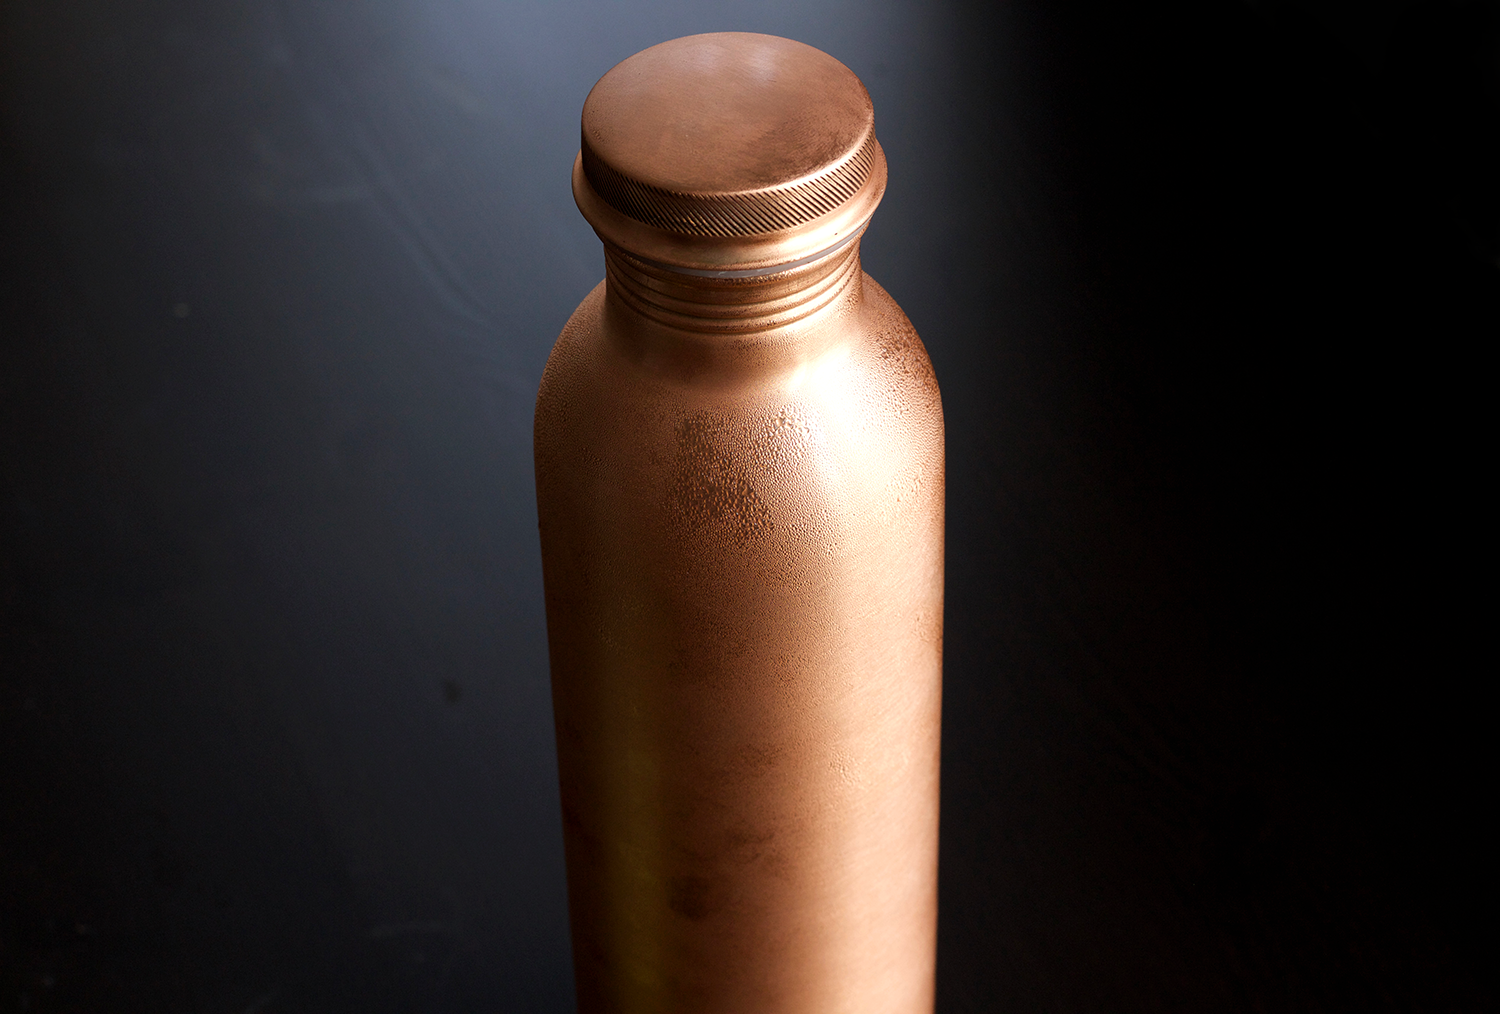 Kosdeg Copper Water Bottle - 34 Oz Extra Large - A Hammered